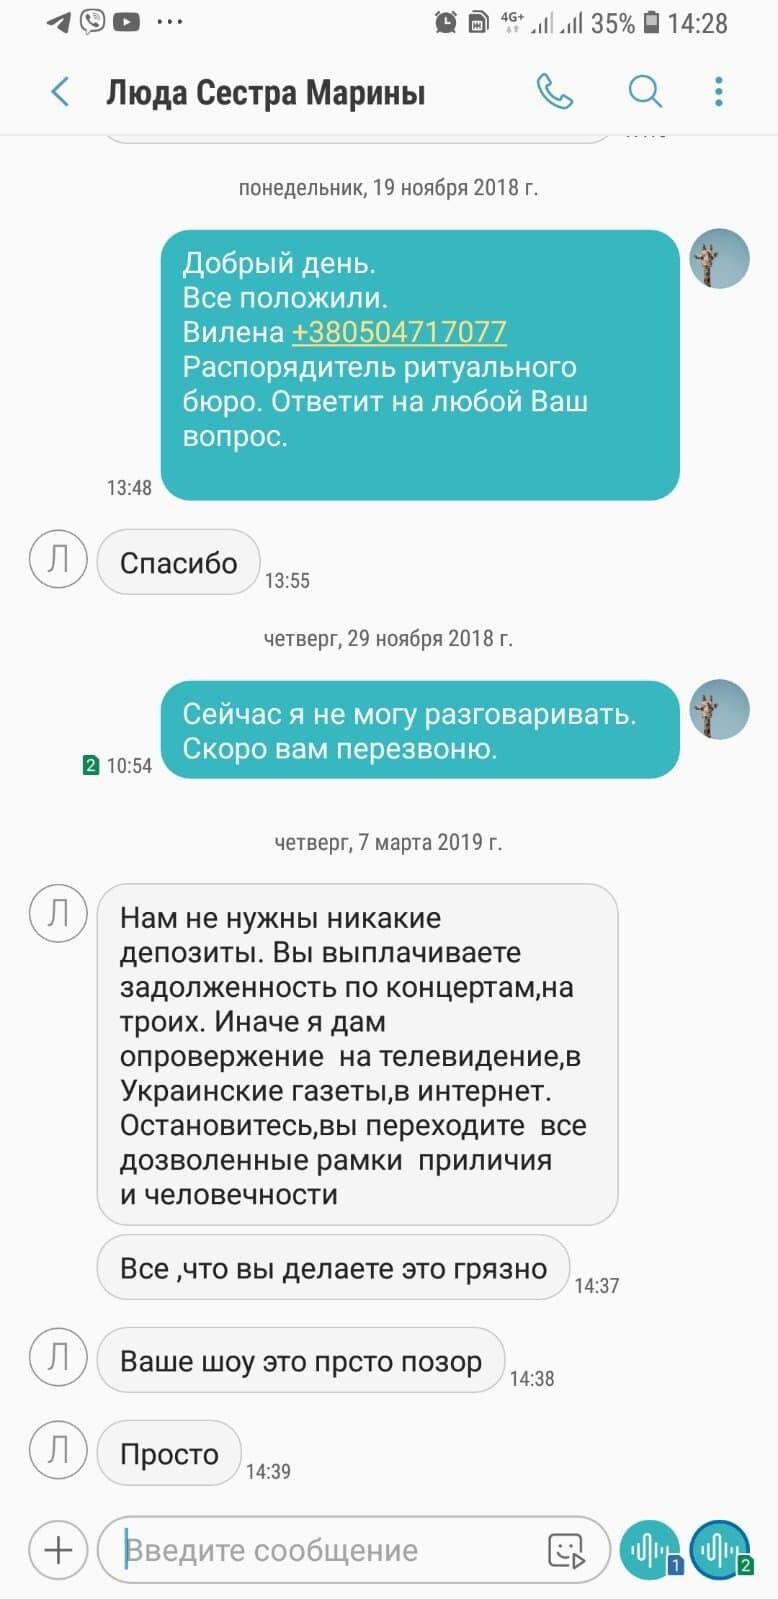 Сестра Марины Поплавской опубликовала переписку ''Дизель Шоу'' в день смерти актрисы. Детали нового скандала